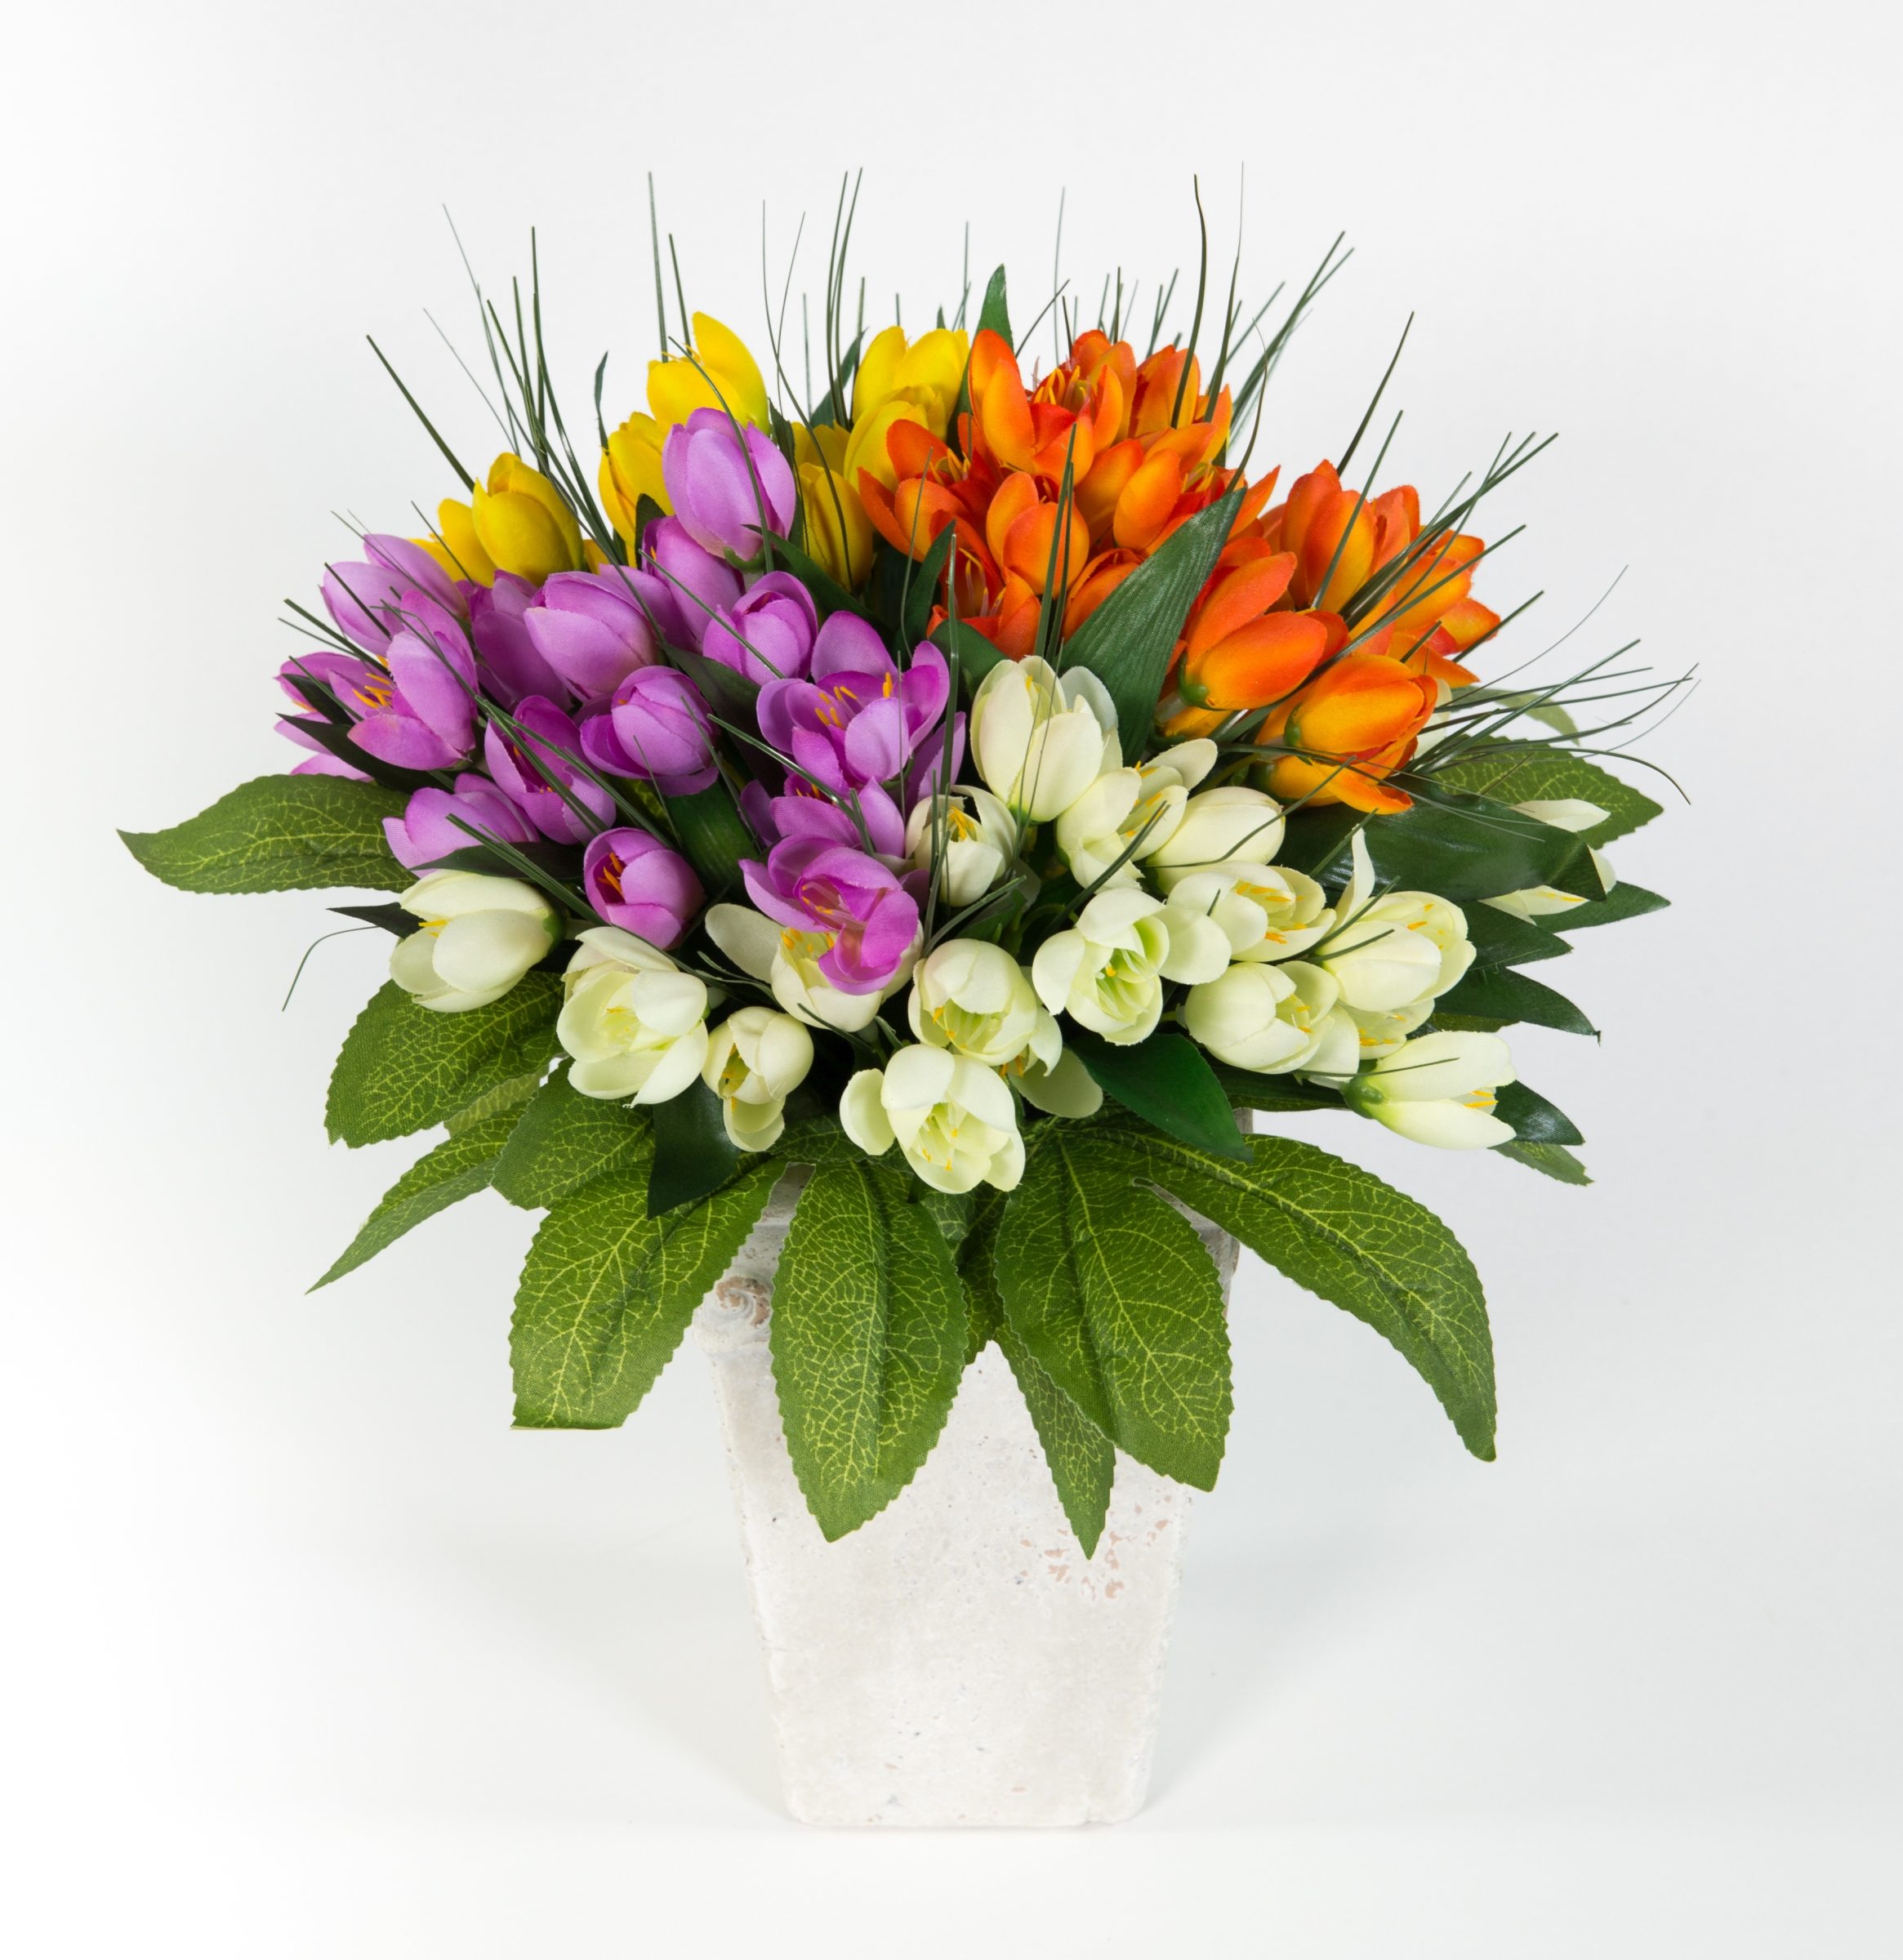 Krokusstrauß 32x30cm bunt Frühlingsstrauß Kunstblumen künstlicher handgebundener Strauß Blumenstrauß